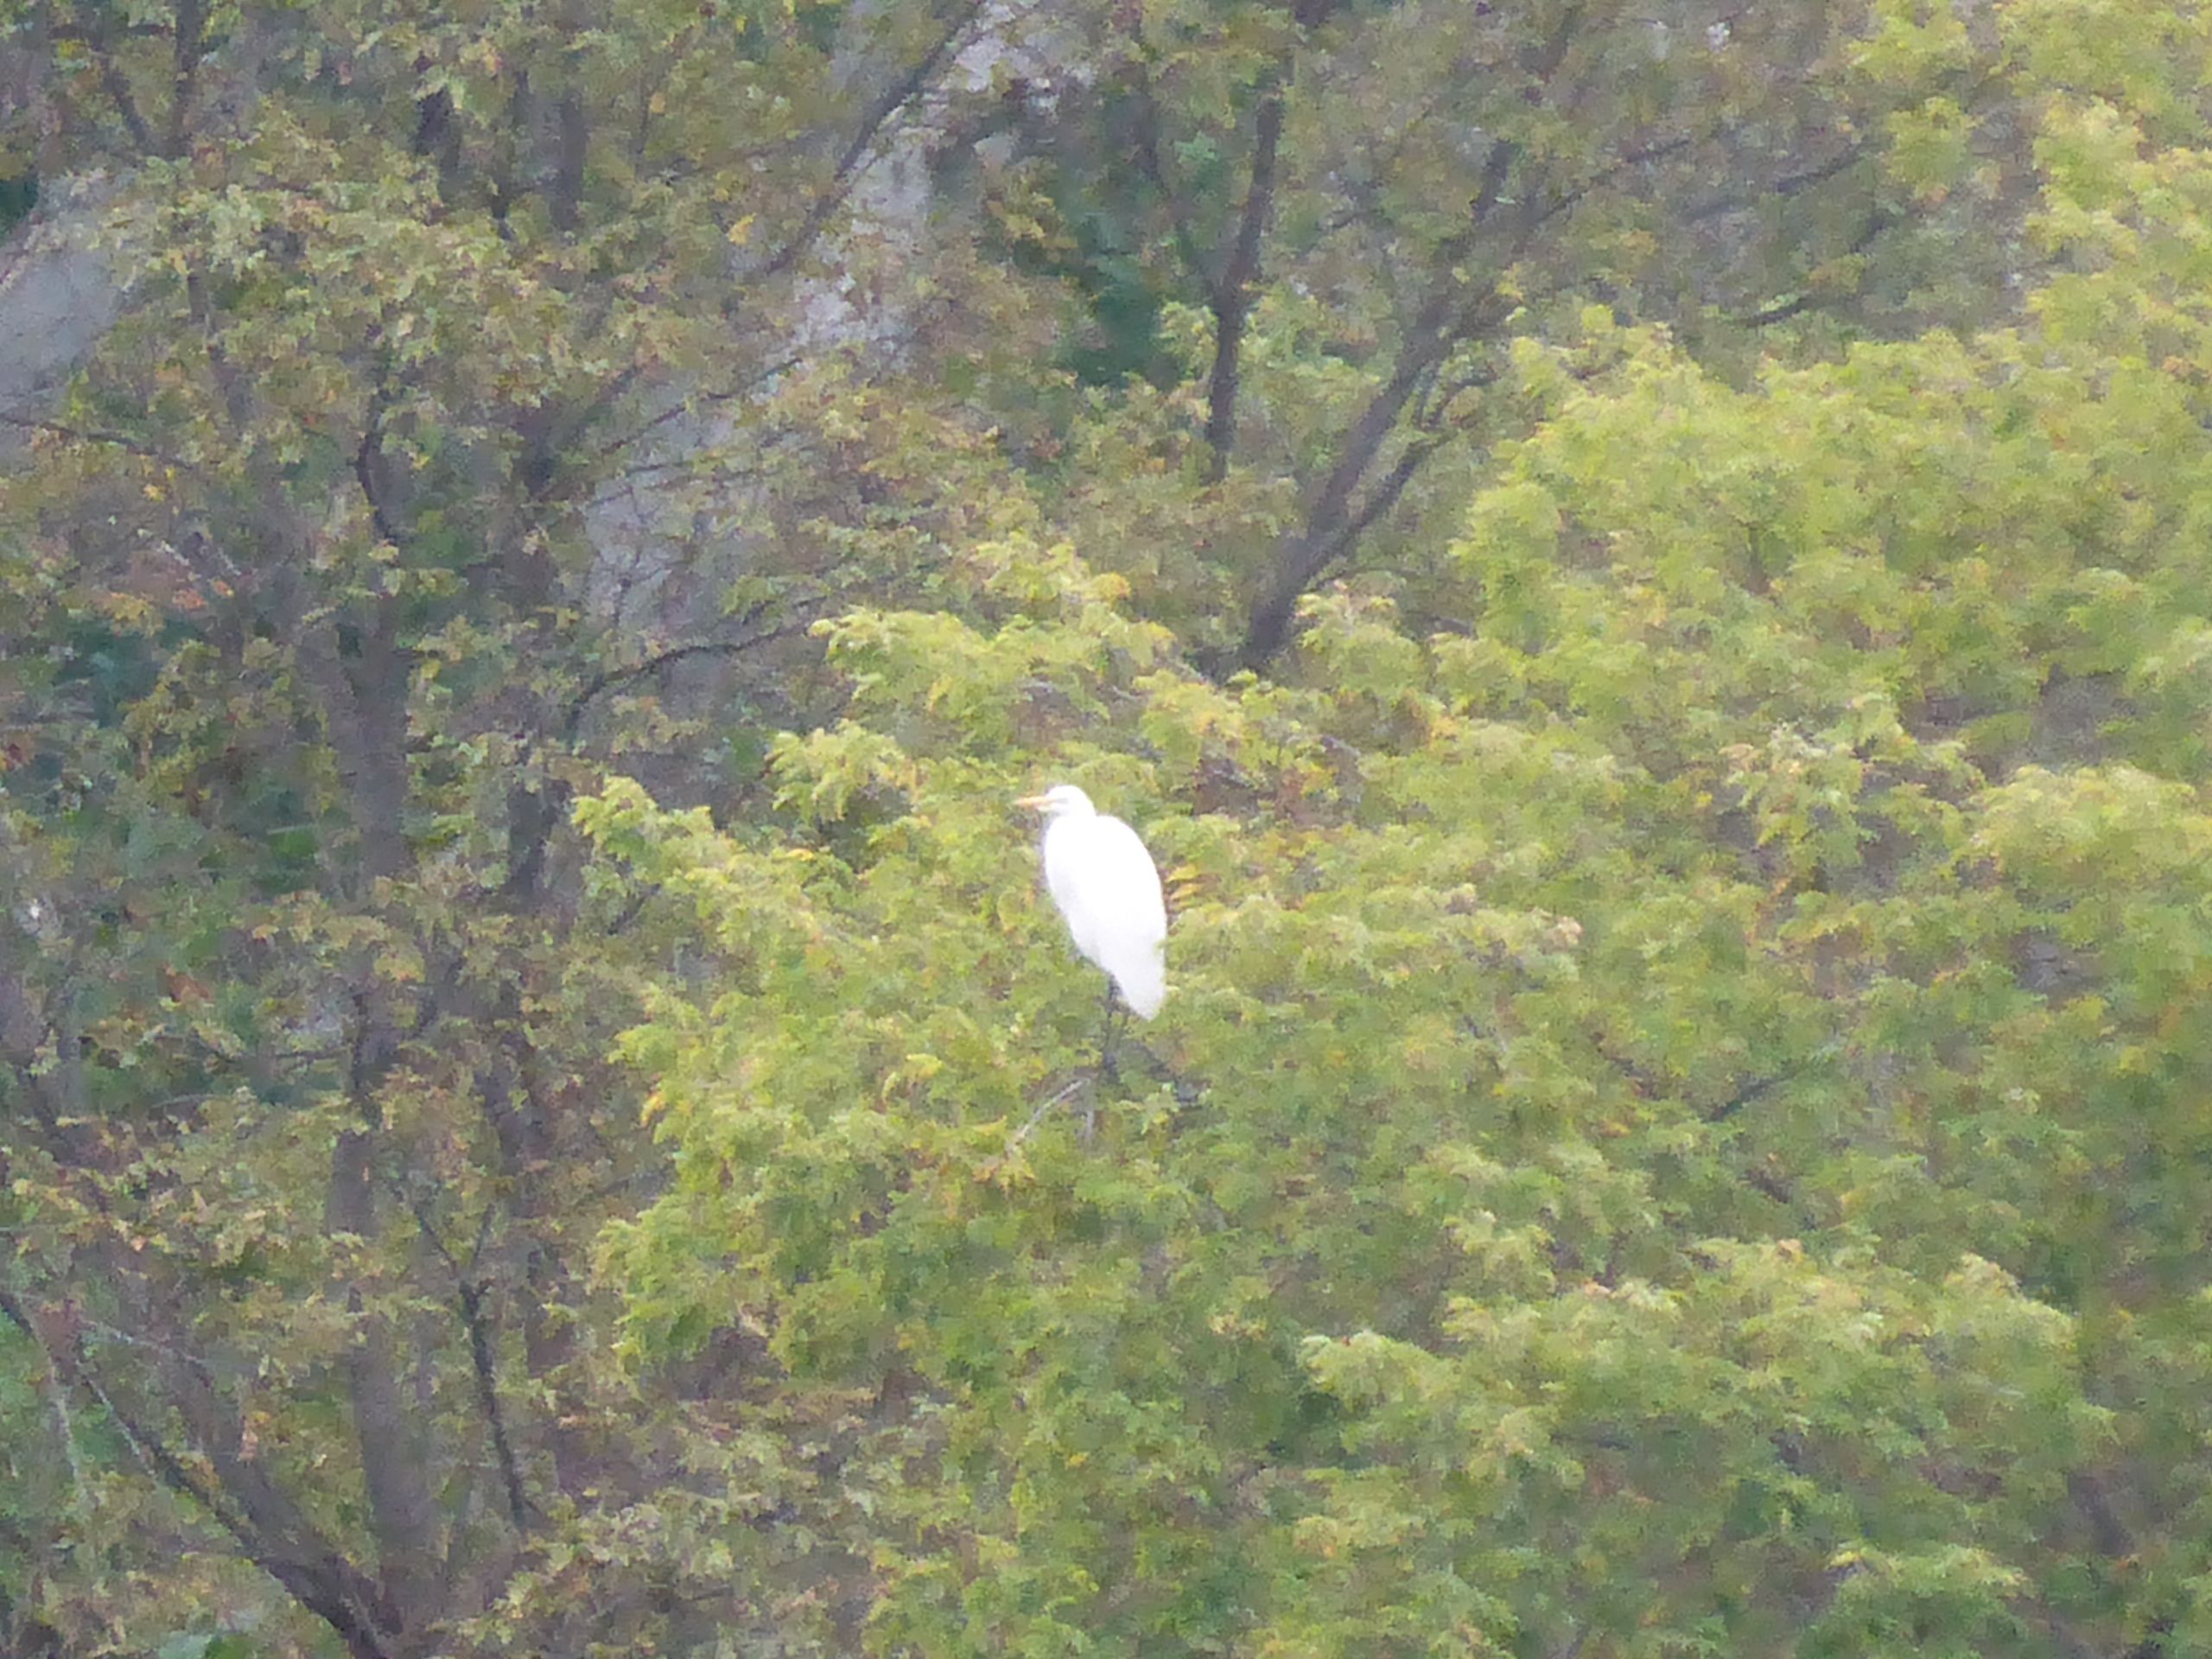 I Spy a Big White Bird in a Tree